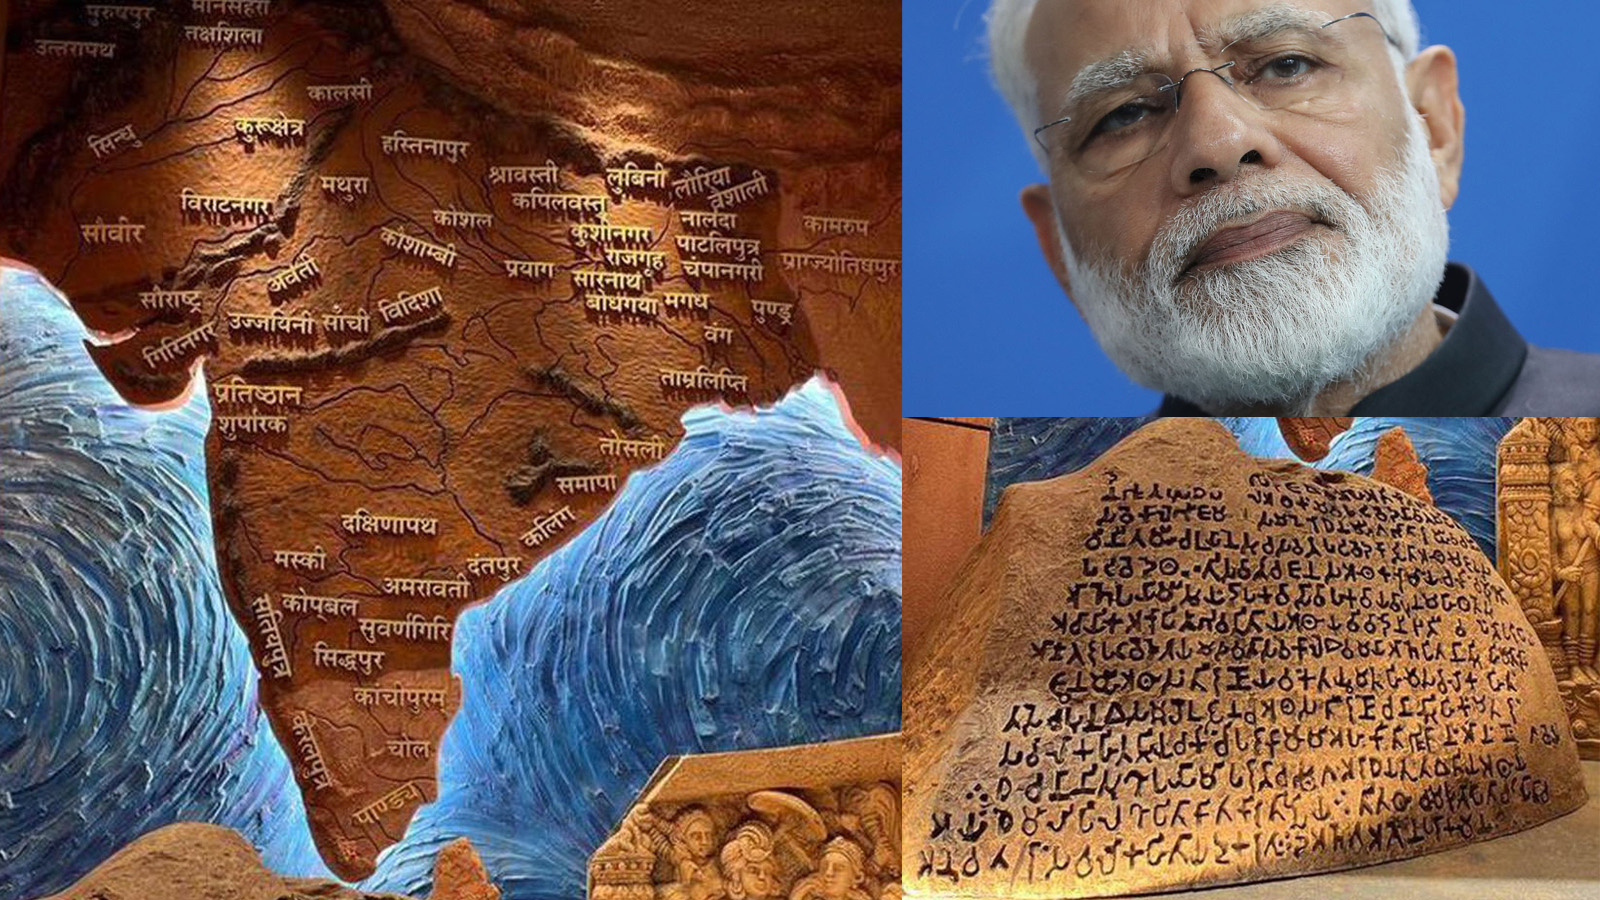 भारतीय संसदमा नक्शाको तरंगः वास्तविक्ता छोप्न मोदी विरोधीले पोतेको राजनीतिक रंग